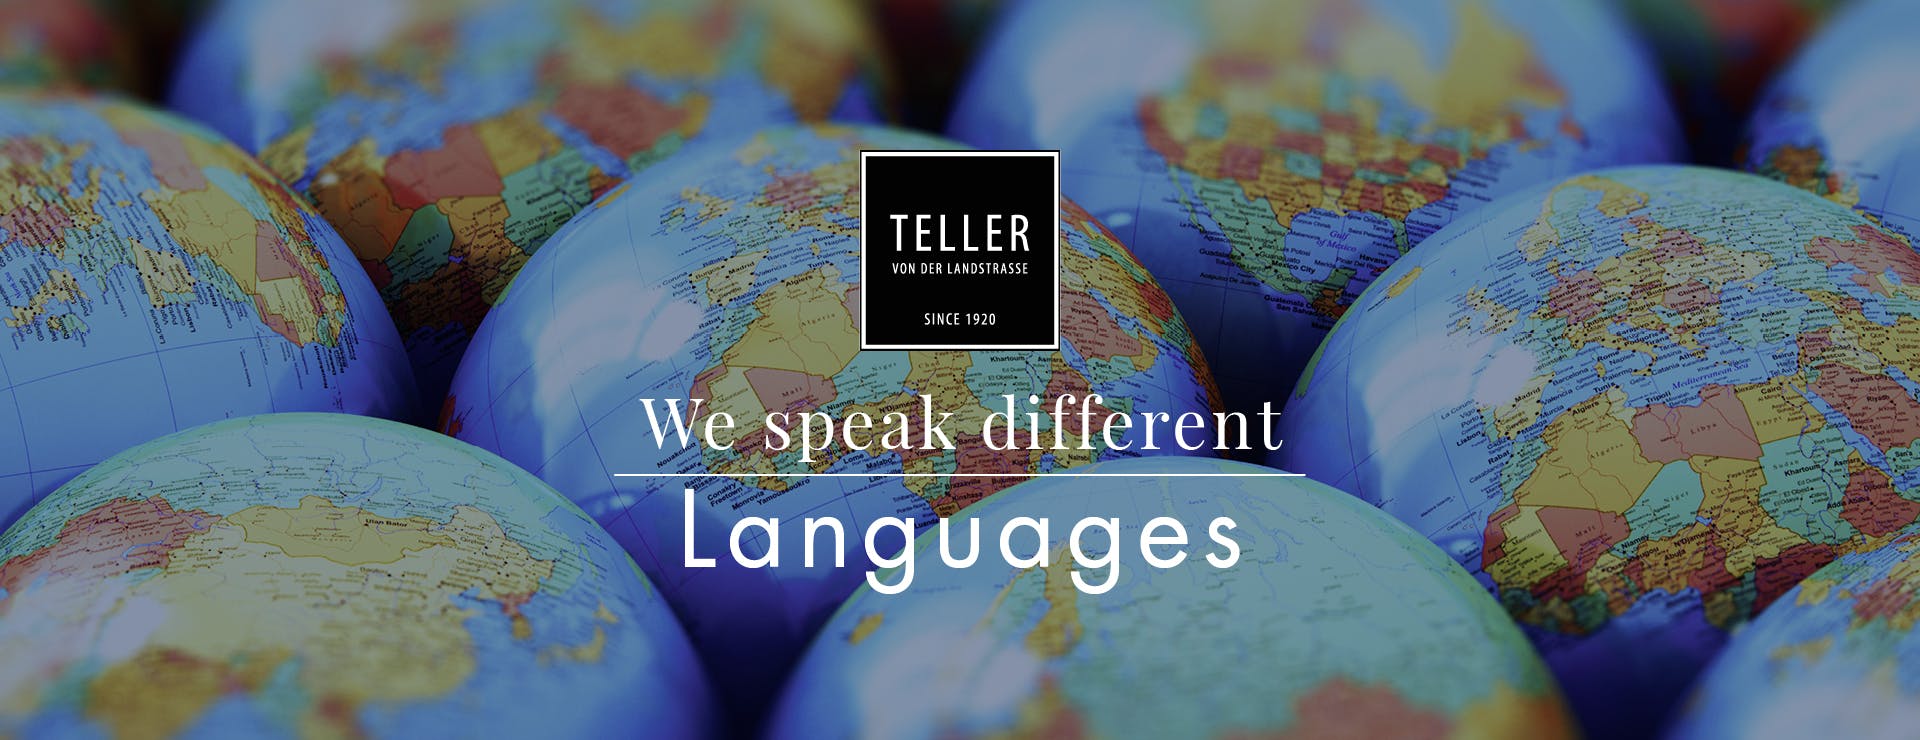 We speak different Languages